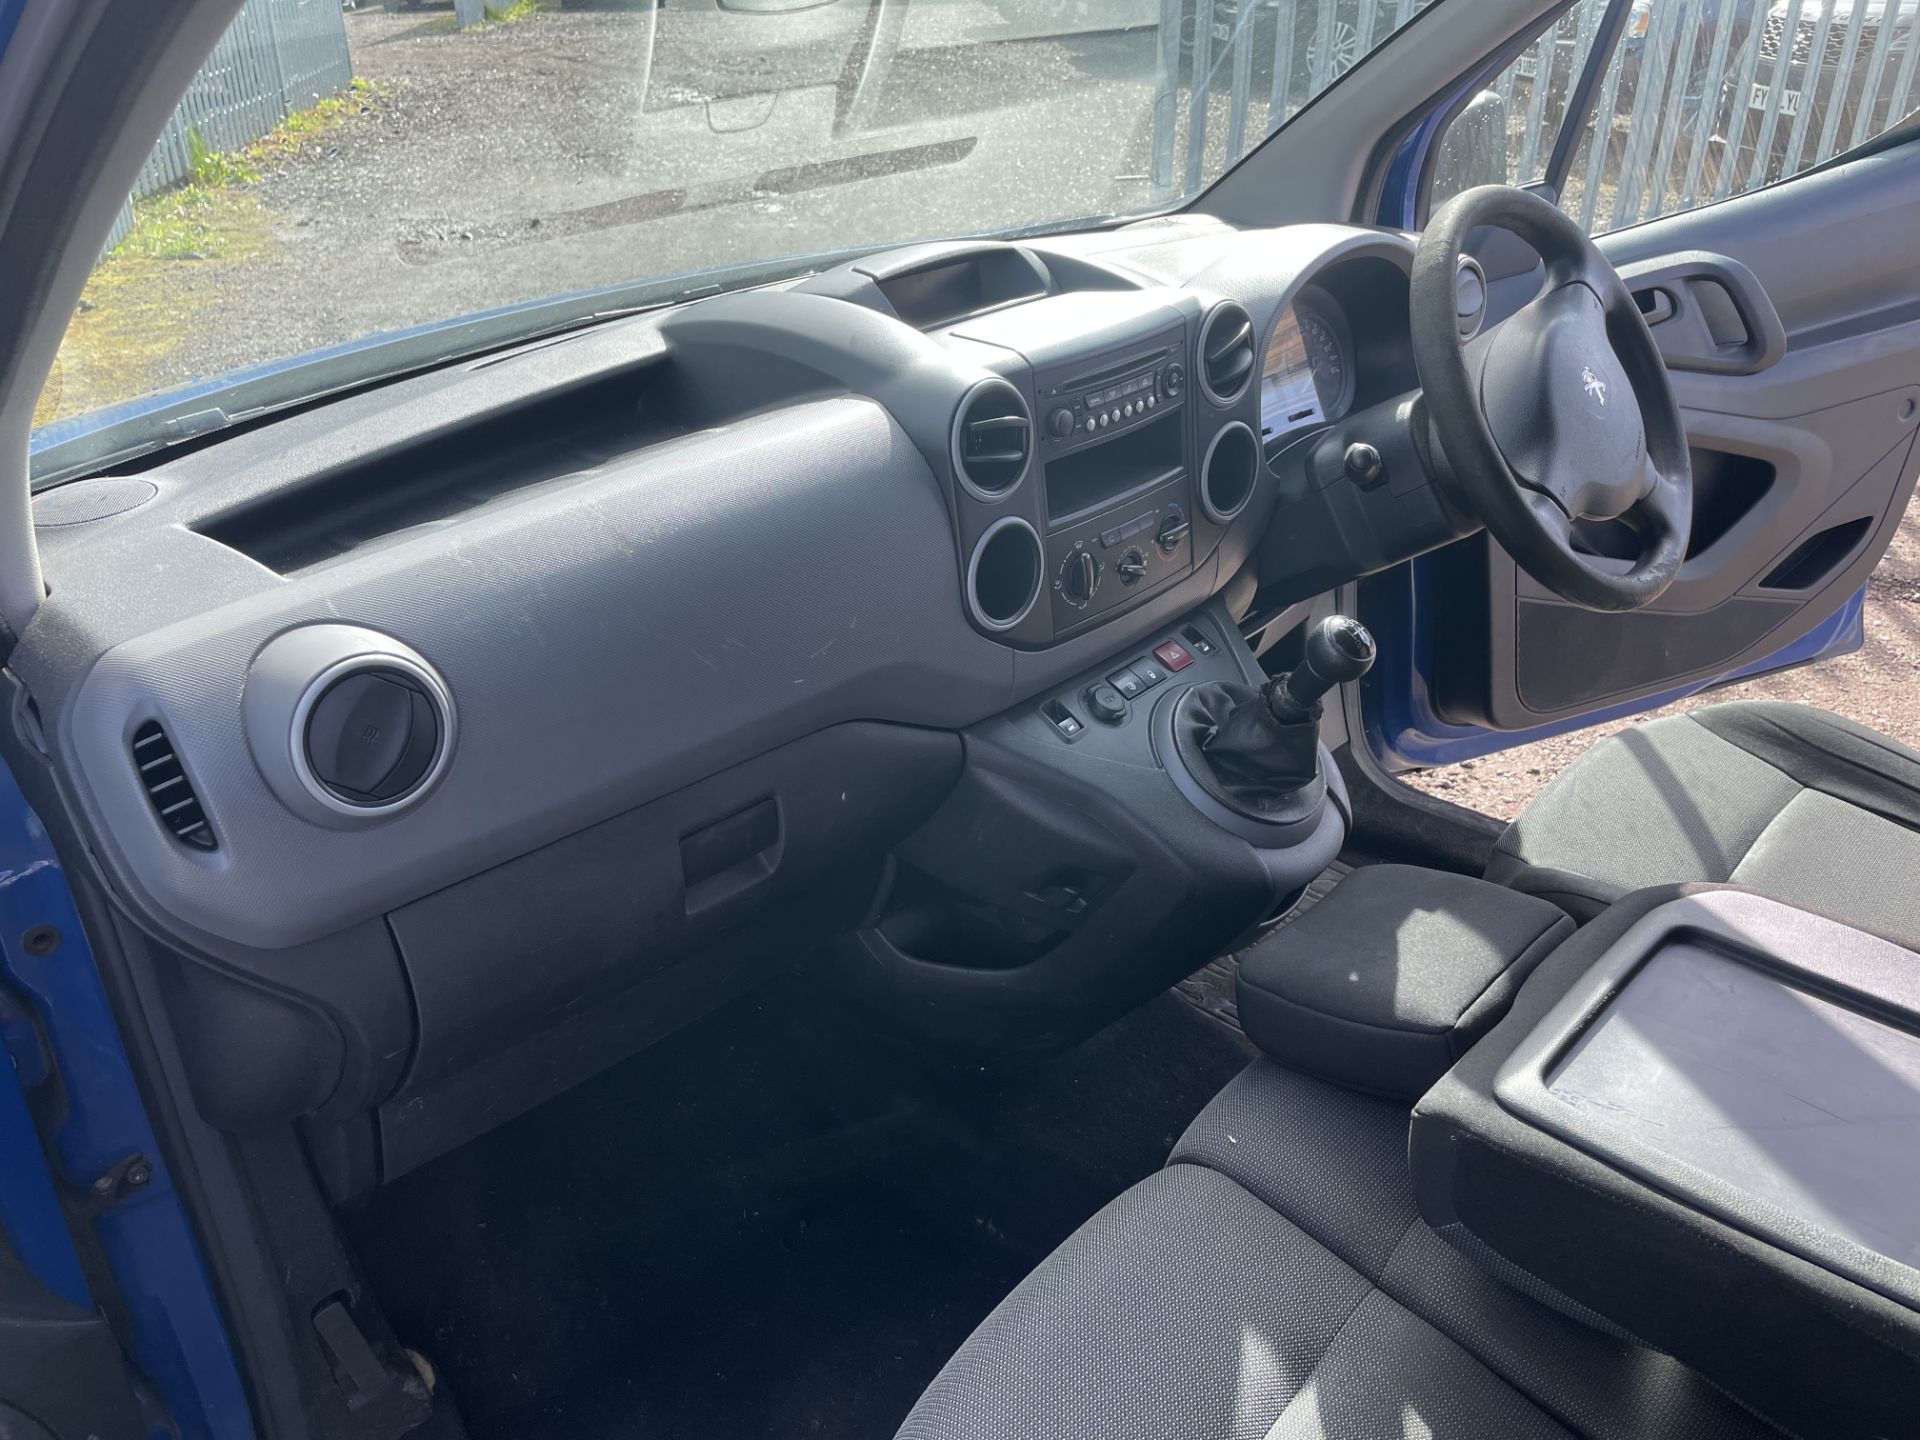 Peugeot Partner S 1.5 BlueHDI 75 L1H1 2018 '18 Reg' - ULEZ Compliant - CD Player - Image 18 of 21